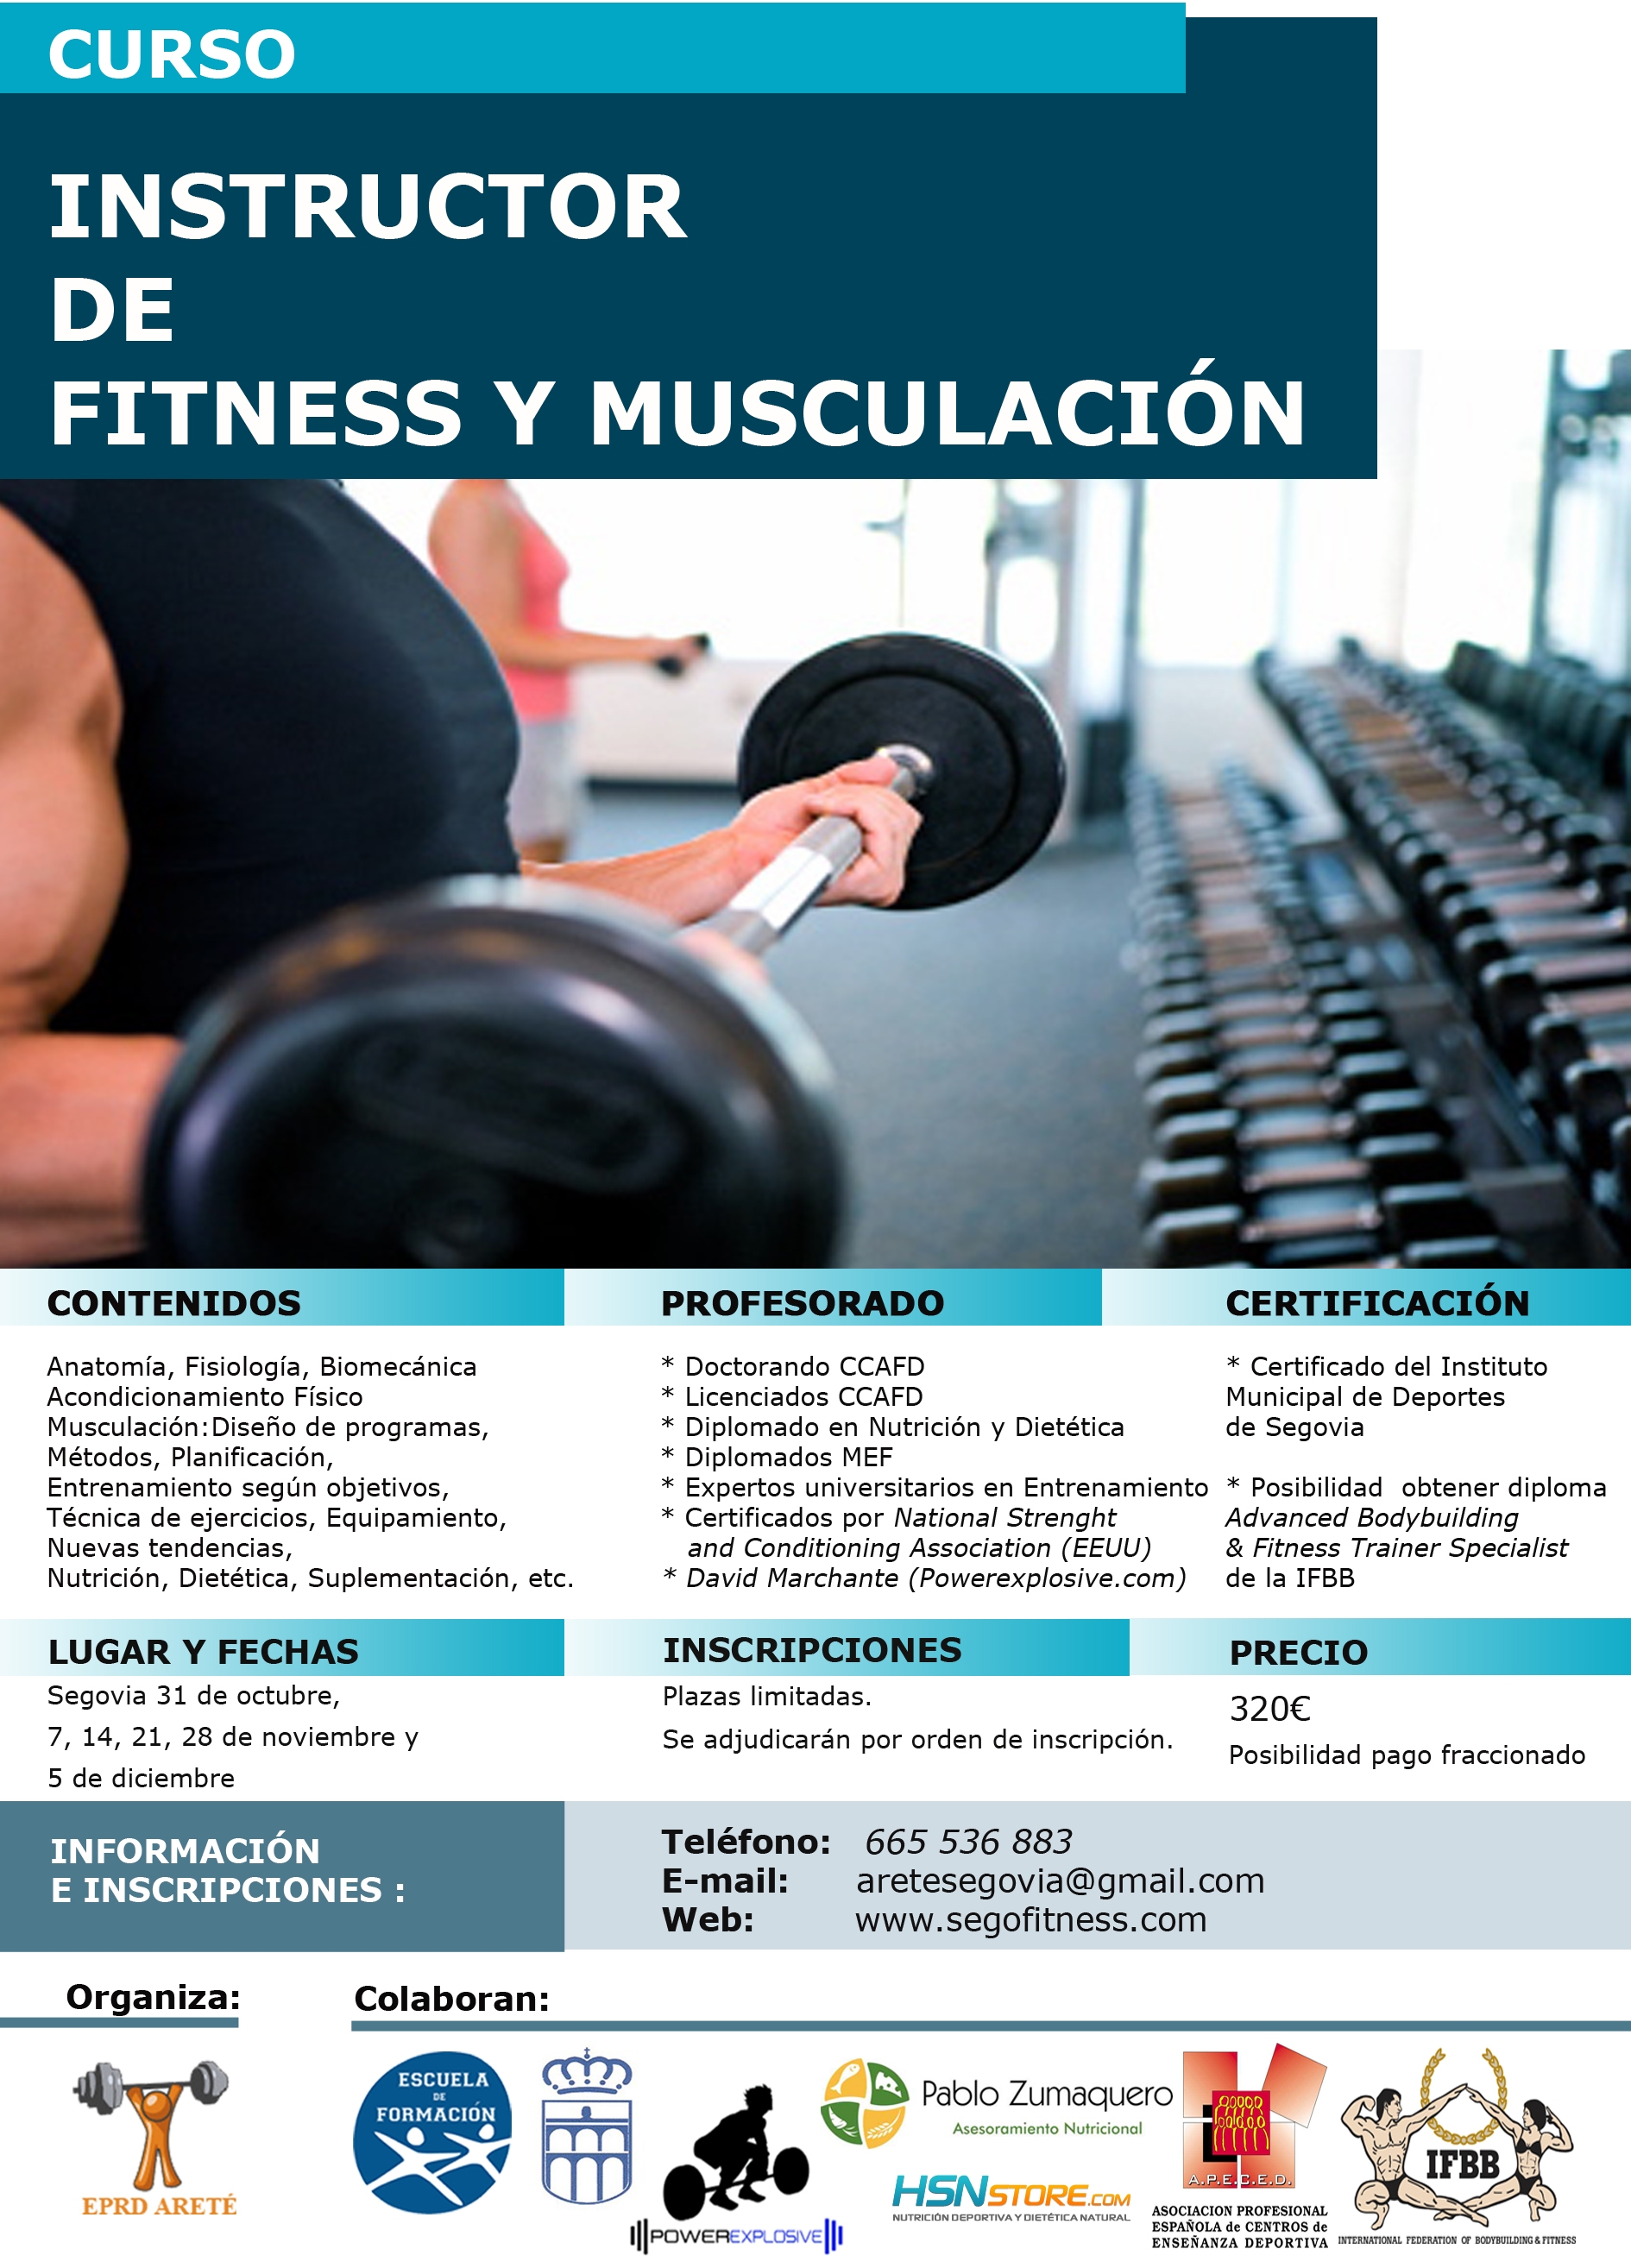 La Escuela de Formación Imd lanza una nueva Edición del Curso de Fitness y Musculación